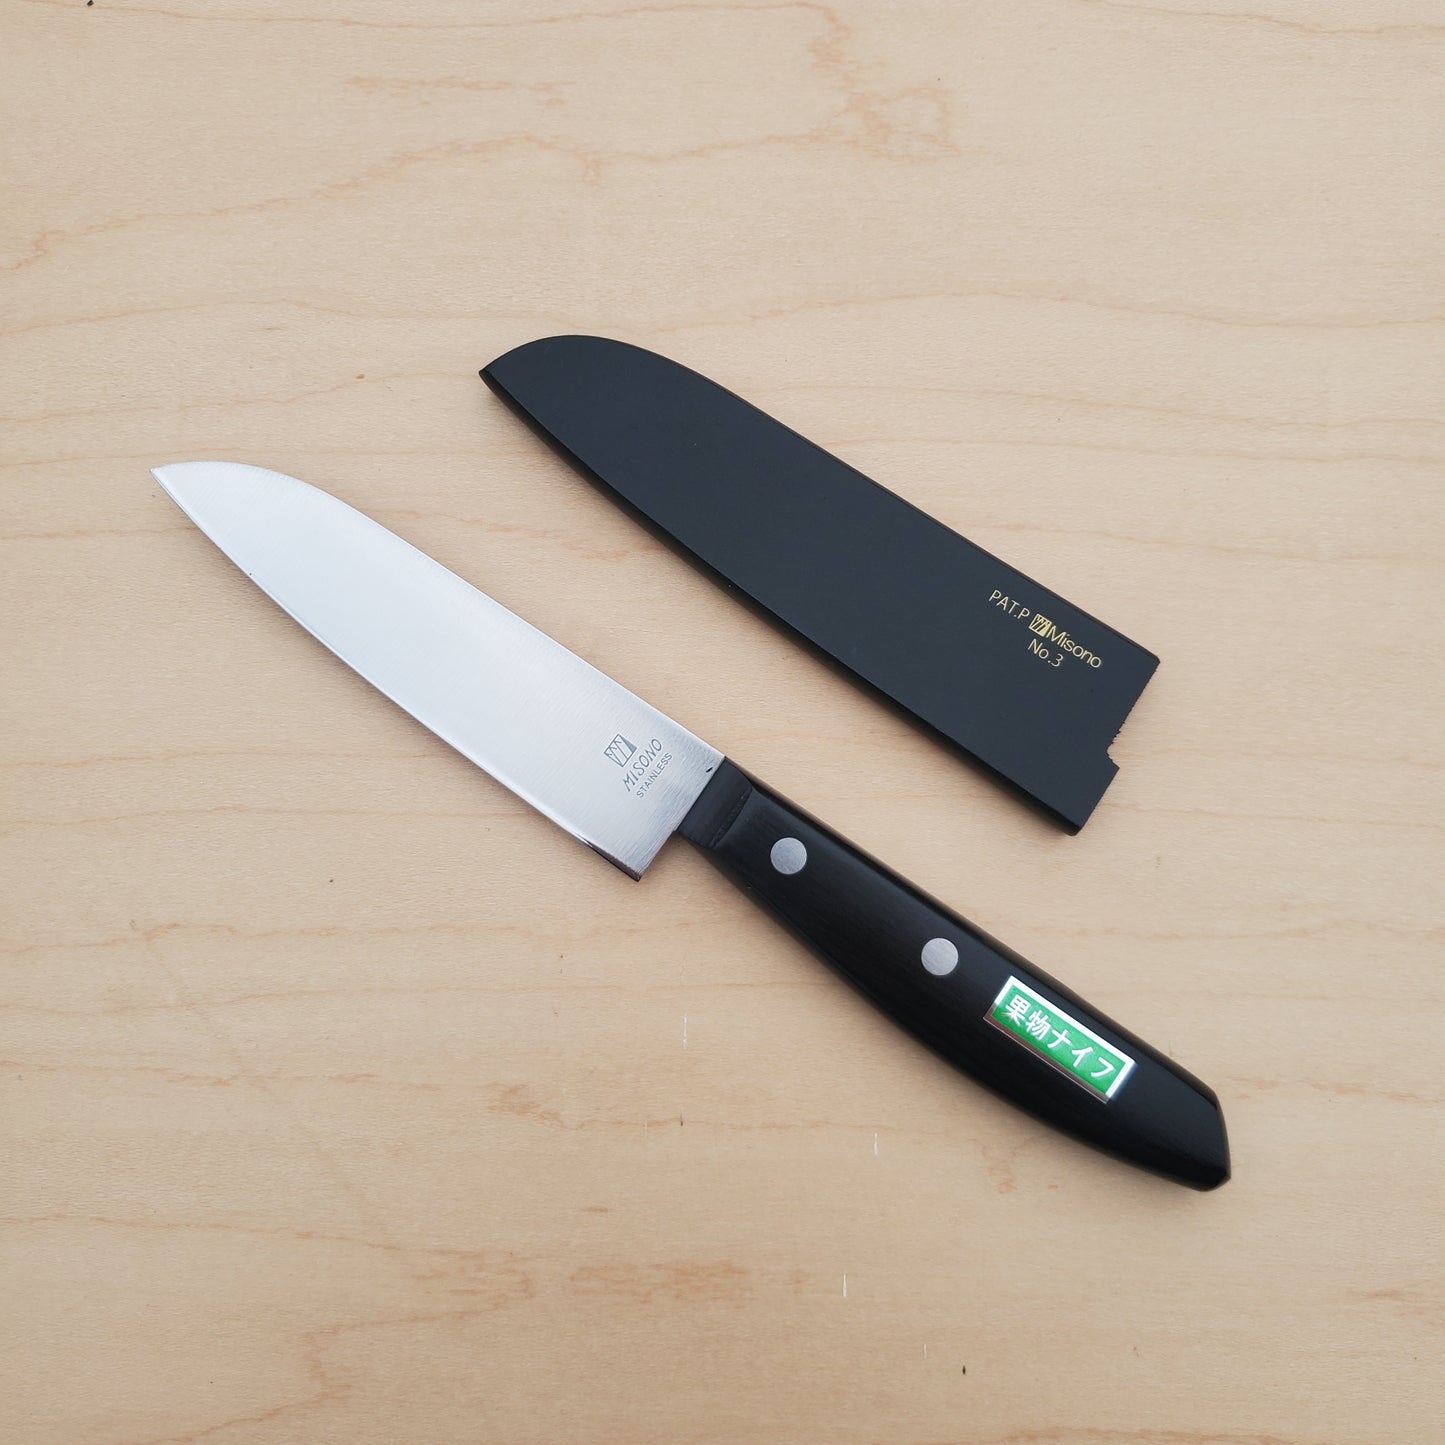 Misono Utility Knife with Sheath